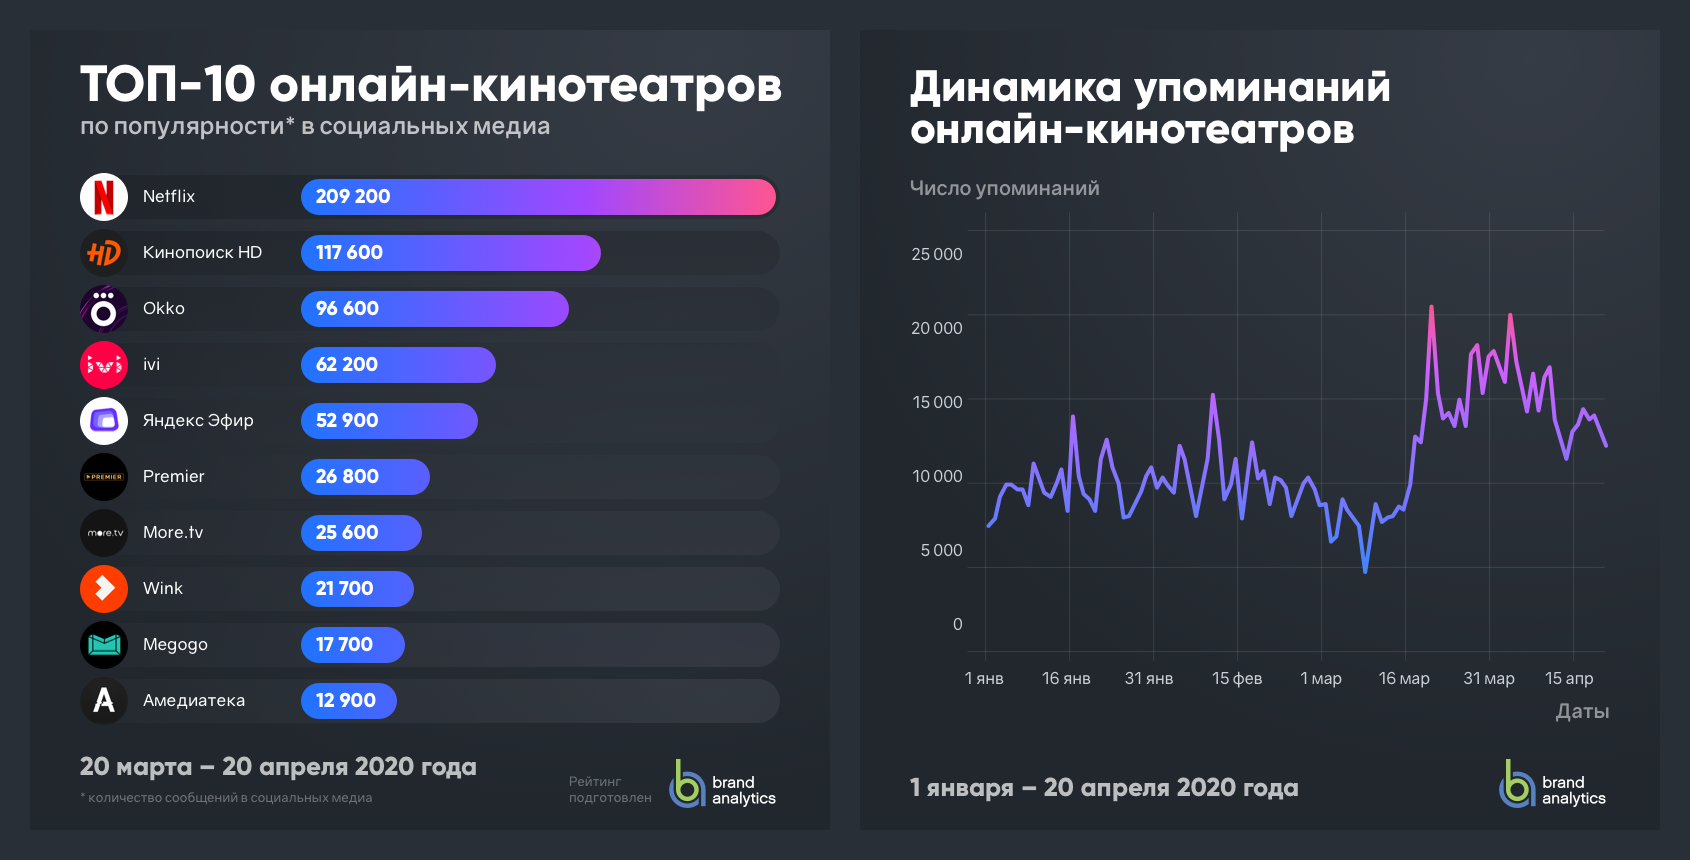 Рейтинг российского интернета